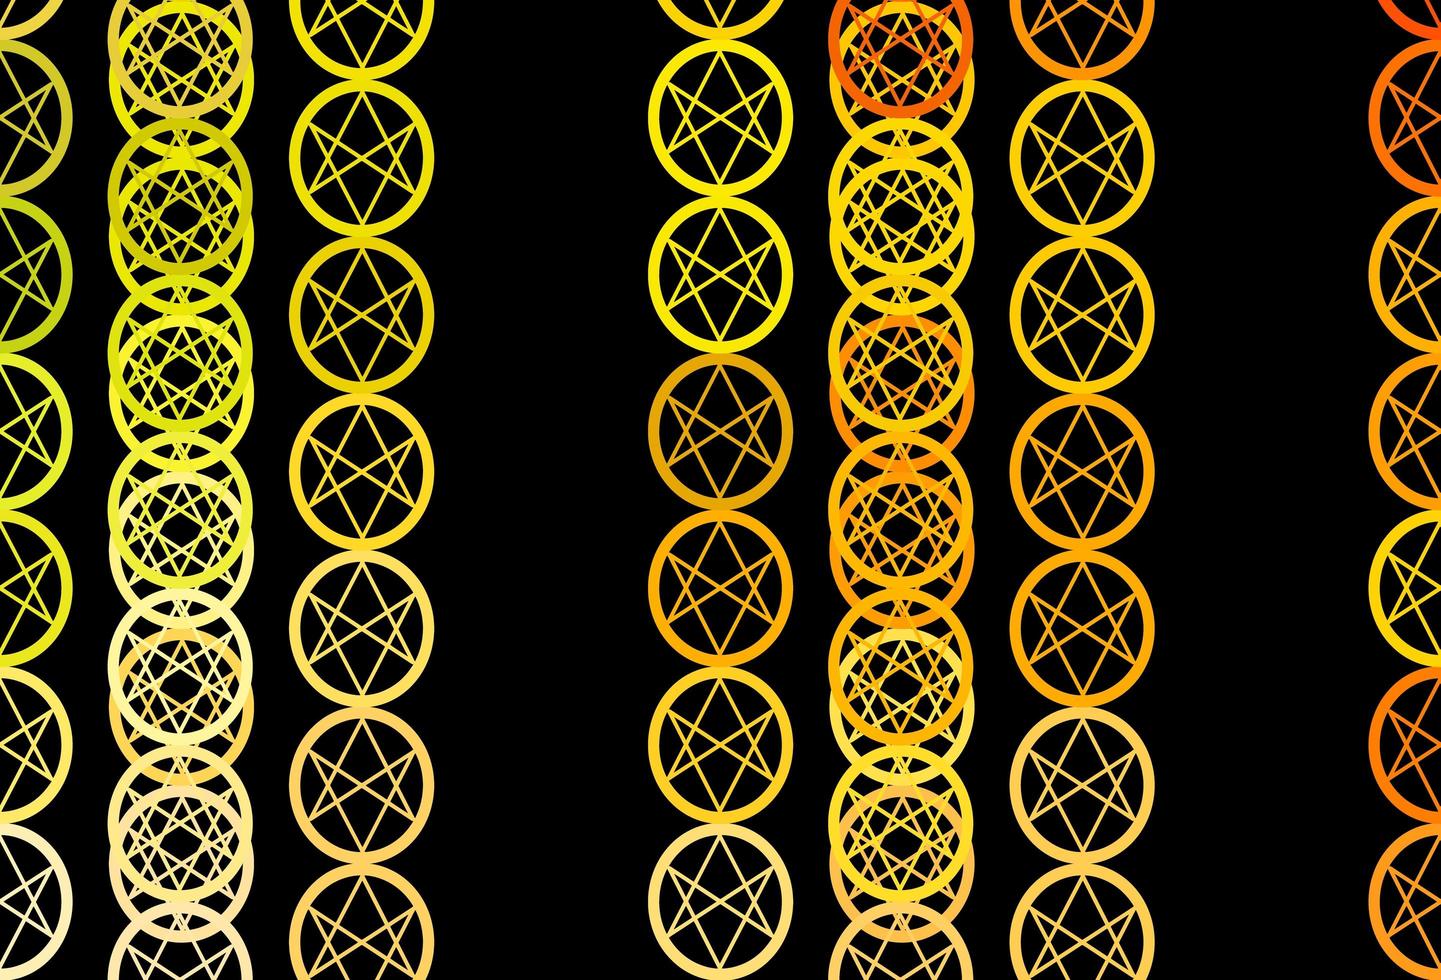 mörkrosa gul vektorstruktur med religionssymboler vektor